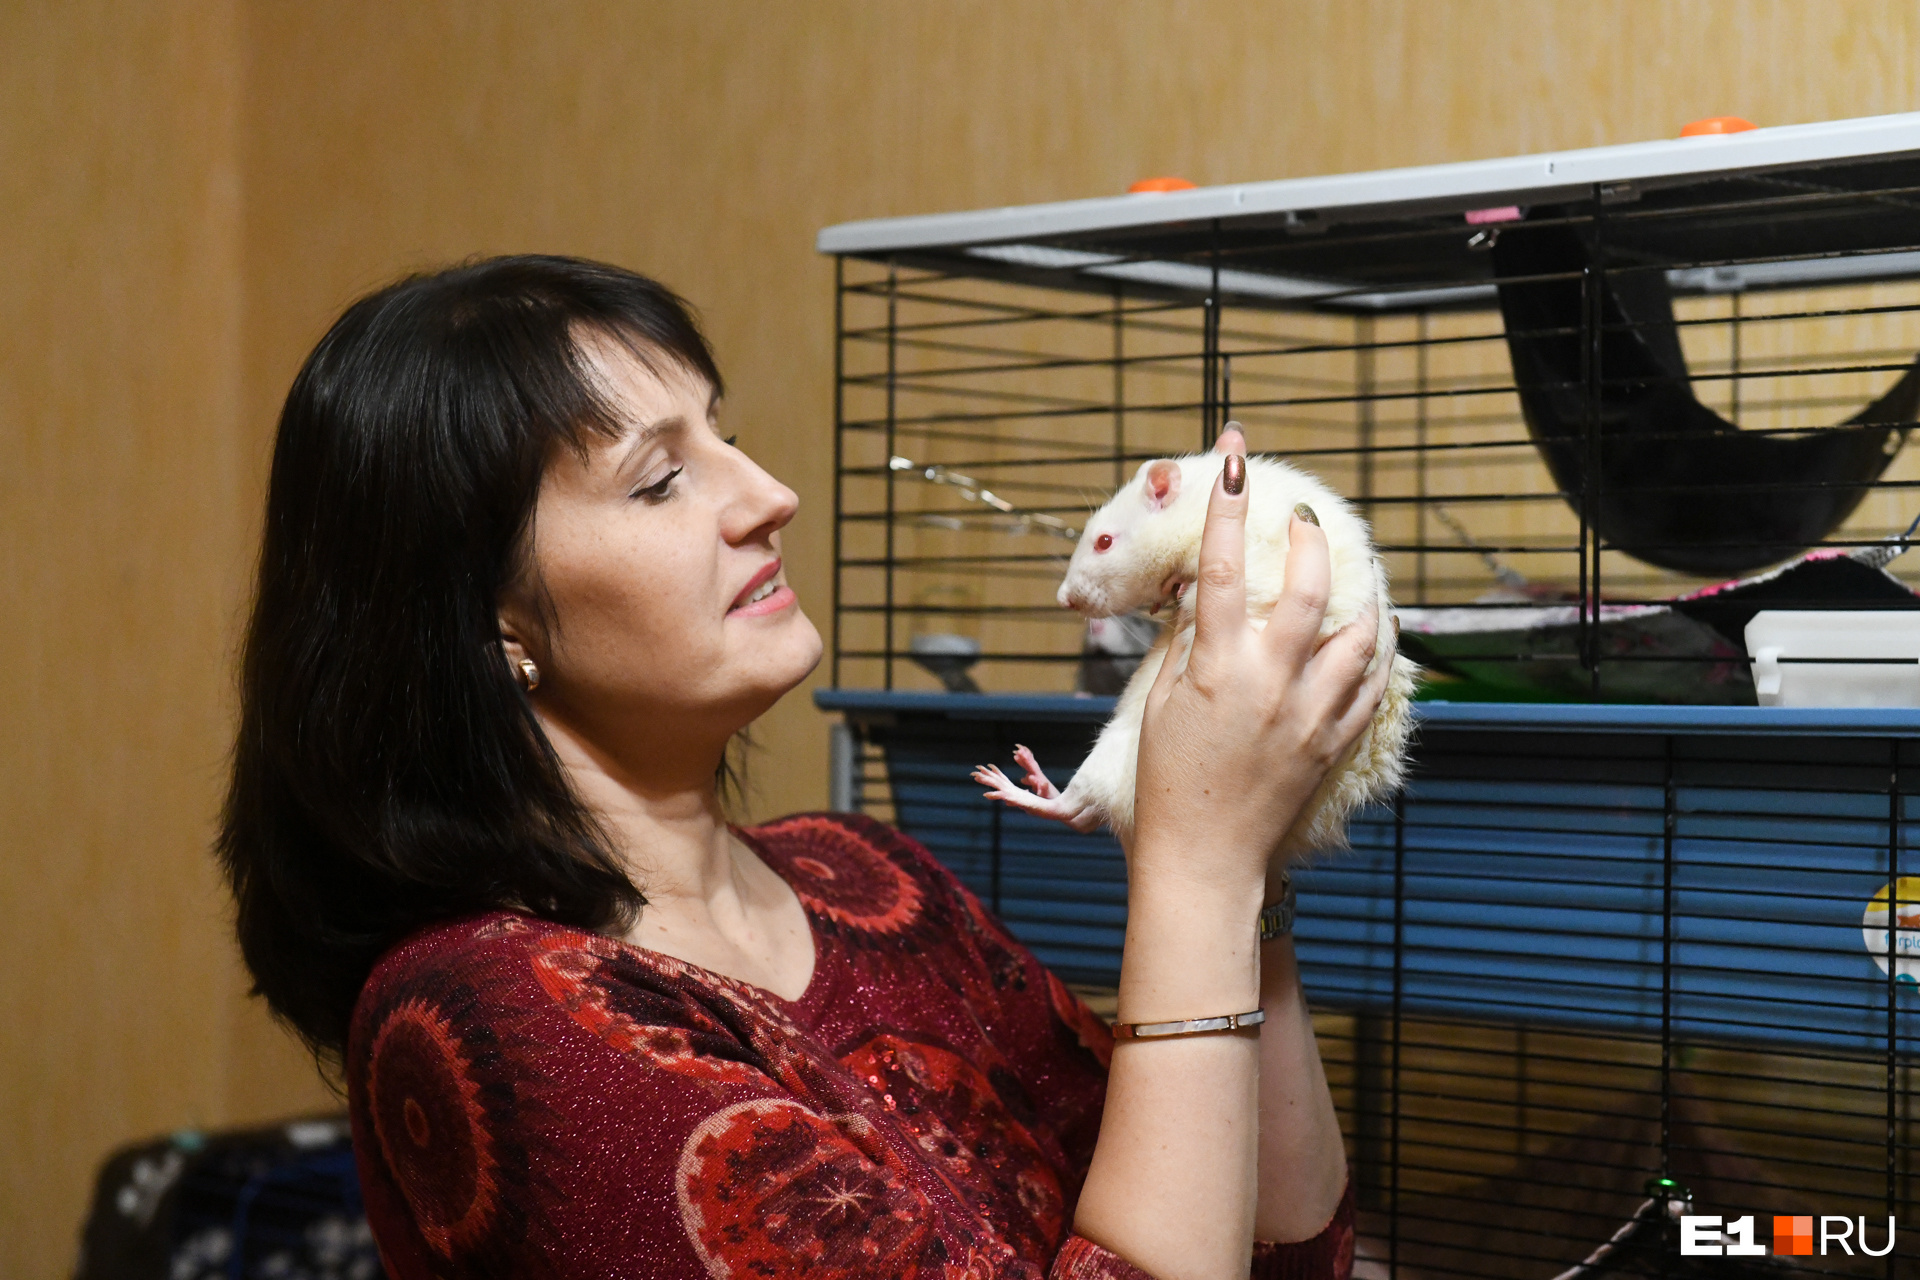 Татьяна Самойлова с бывшей подопытной крысой